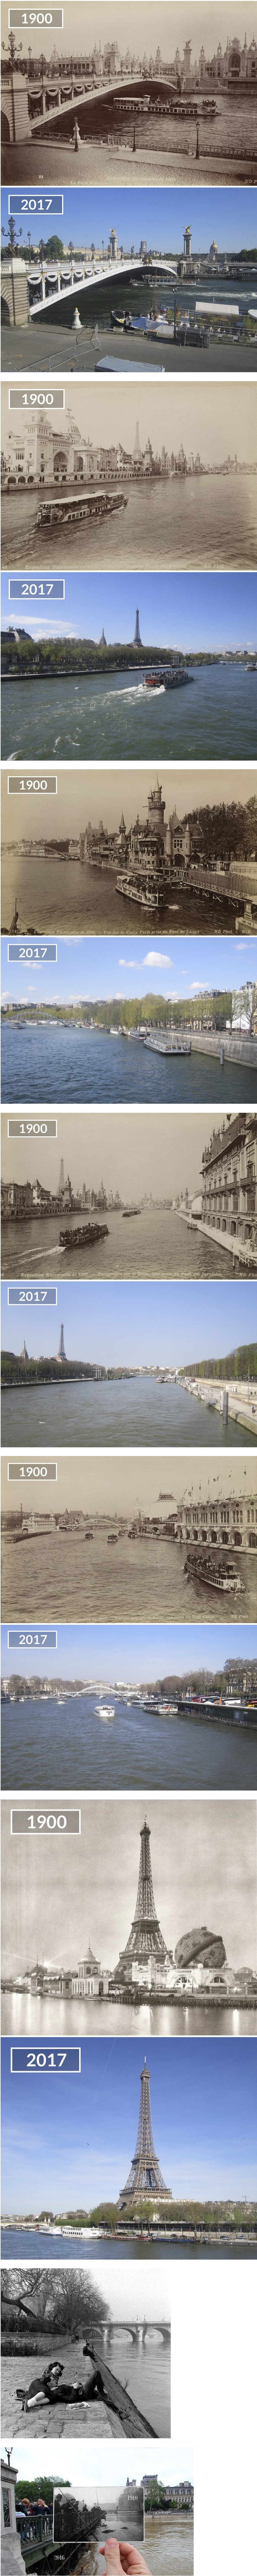 프랑스 파리 세느강의 과거와 현재